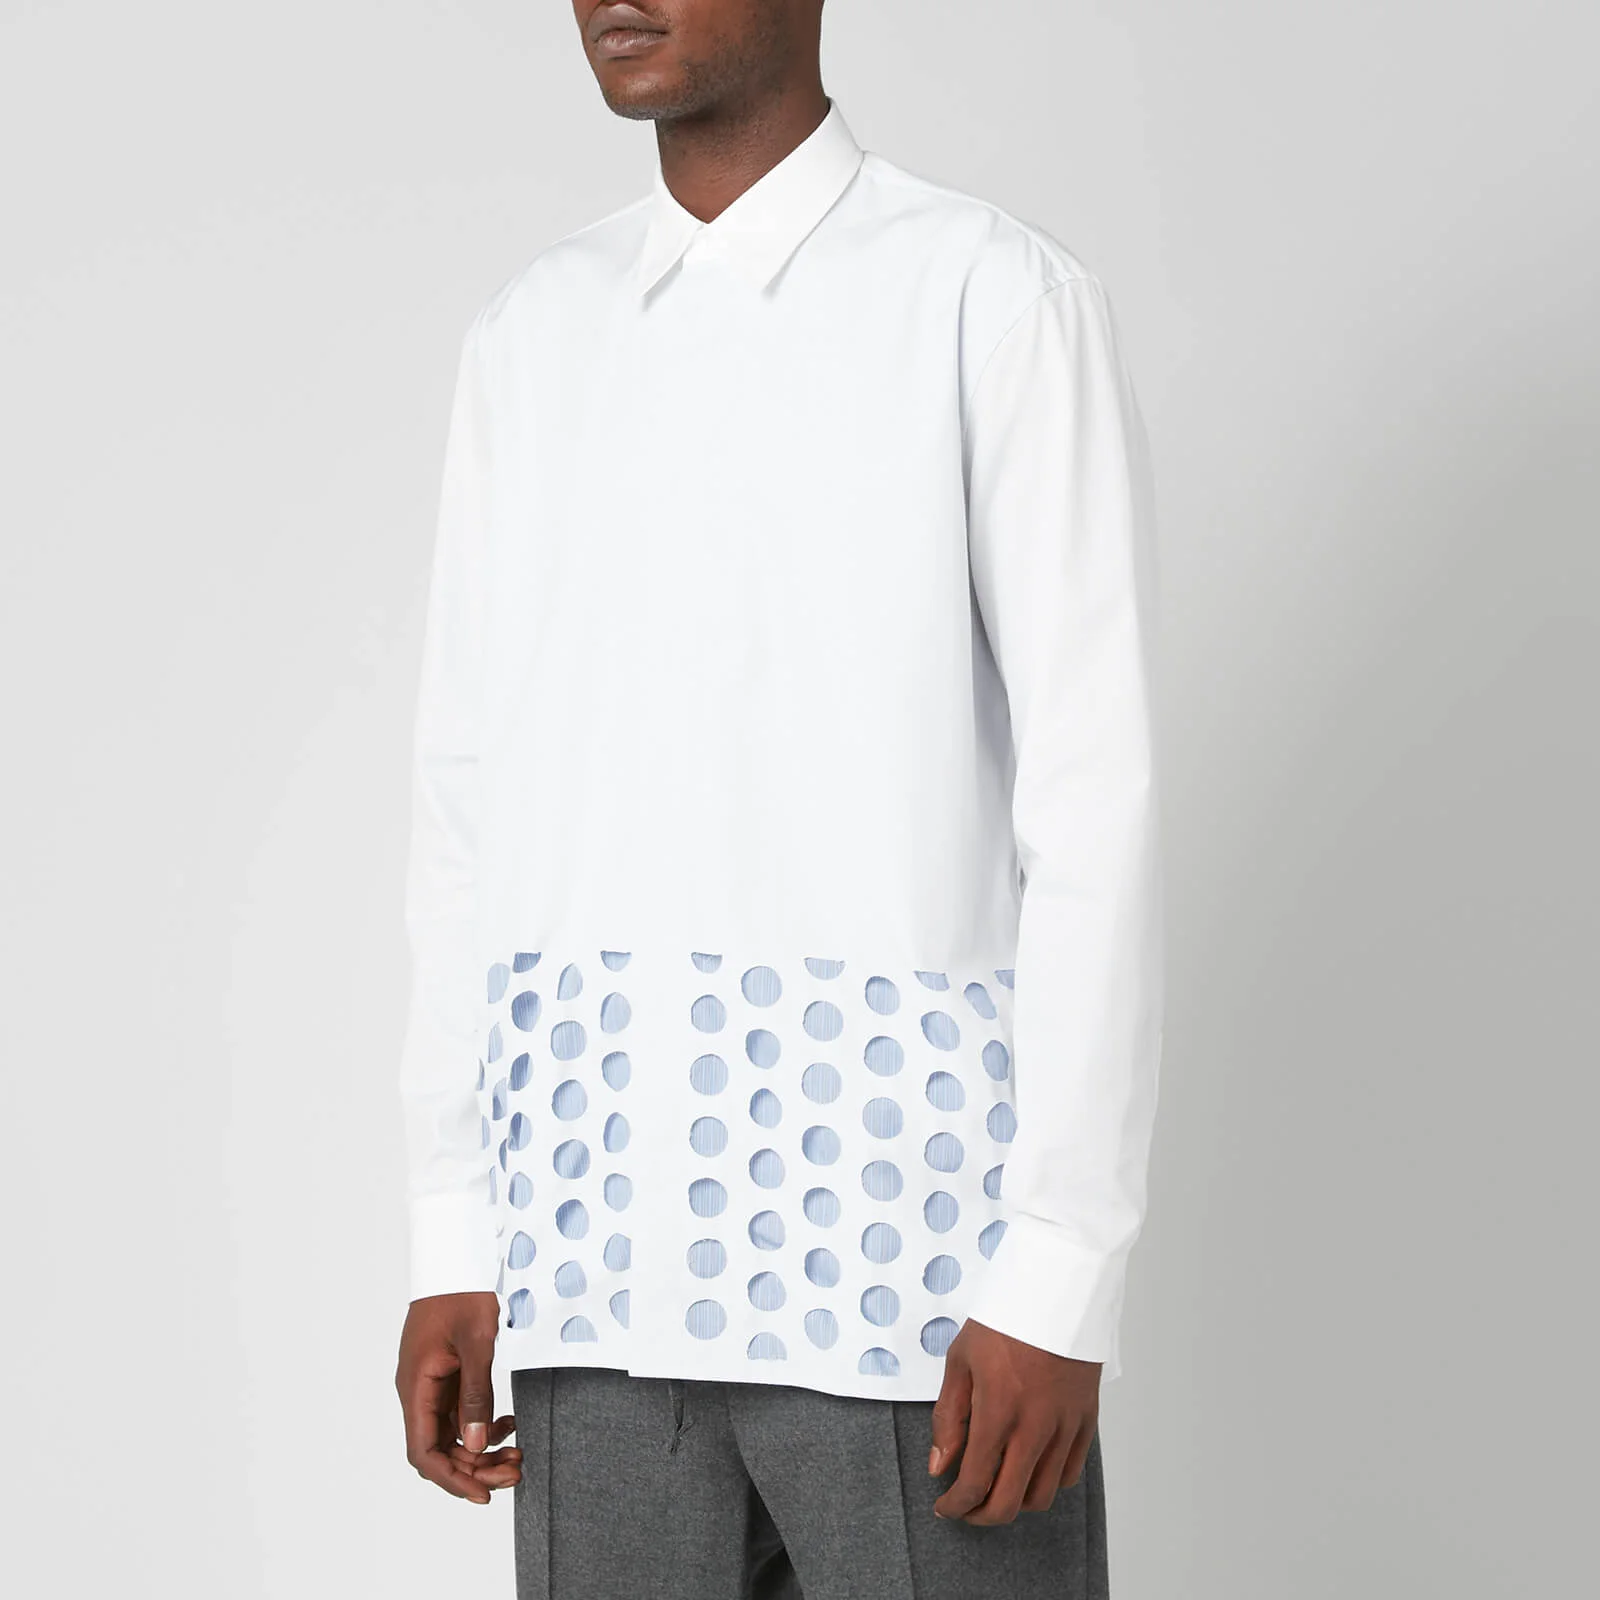 Maison Margiela Men's Popline New Relaxed Shirt - White Image 1